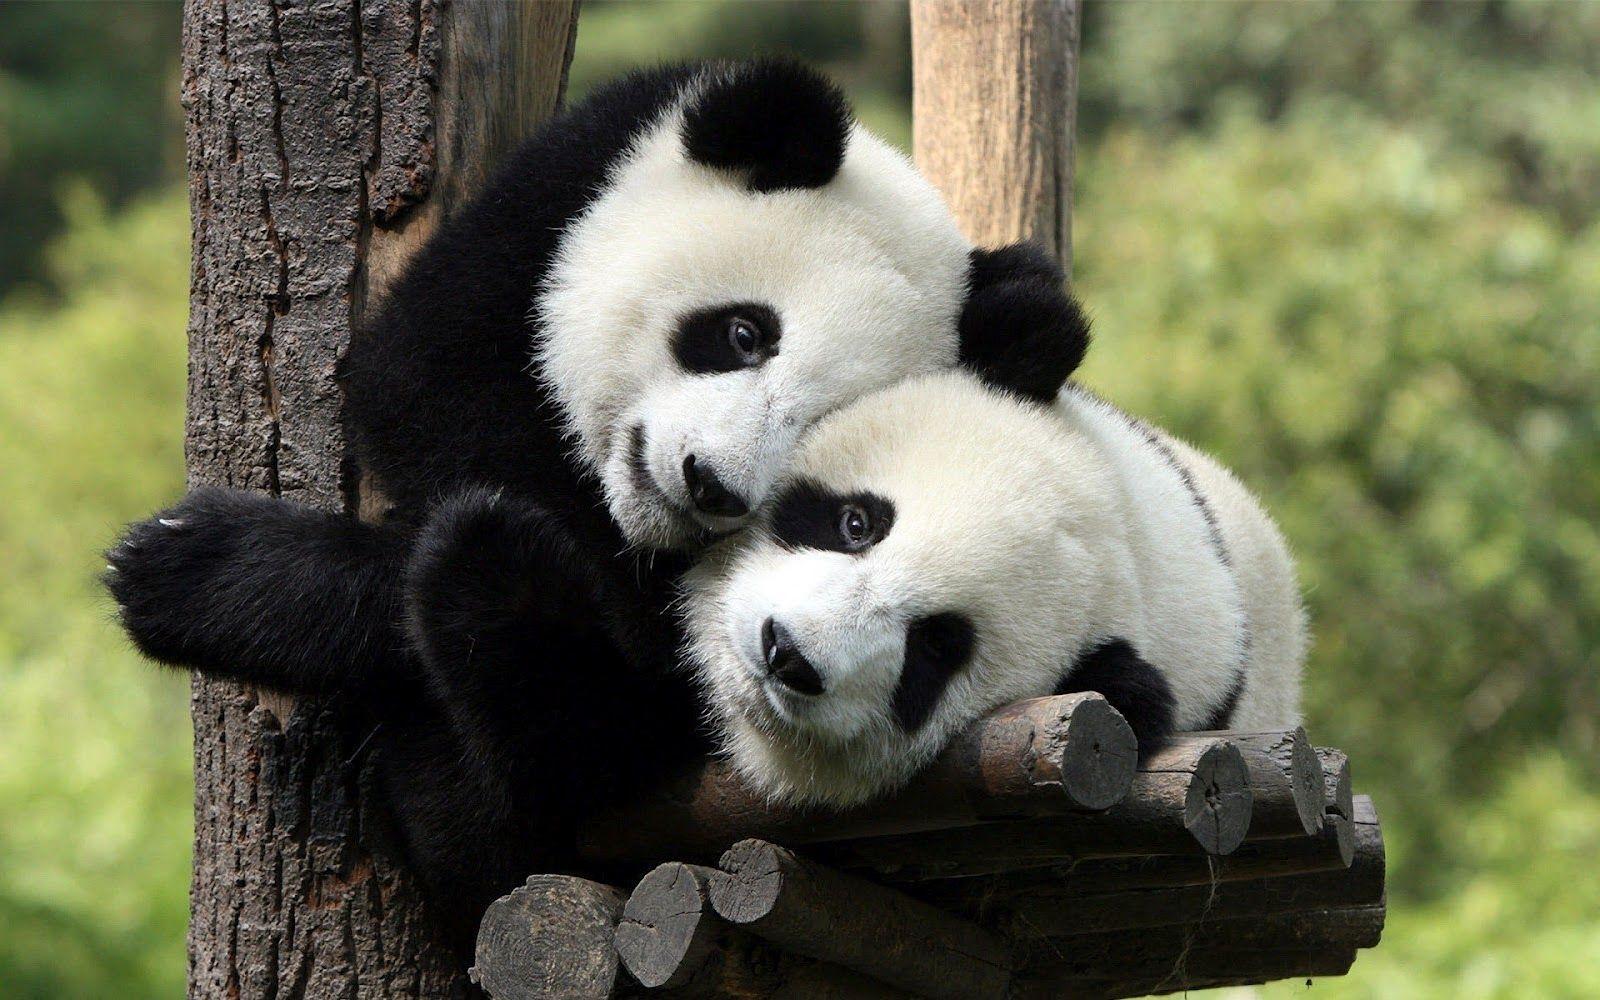 Two panda bears in a tree wallpaper. HD Animals Wallpaper